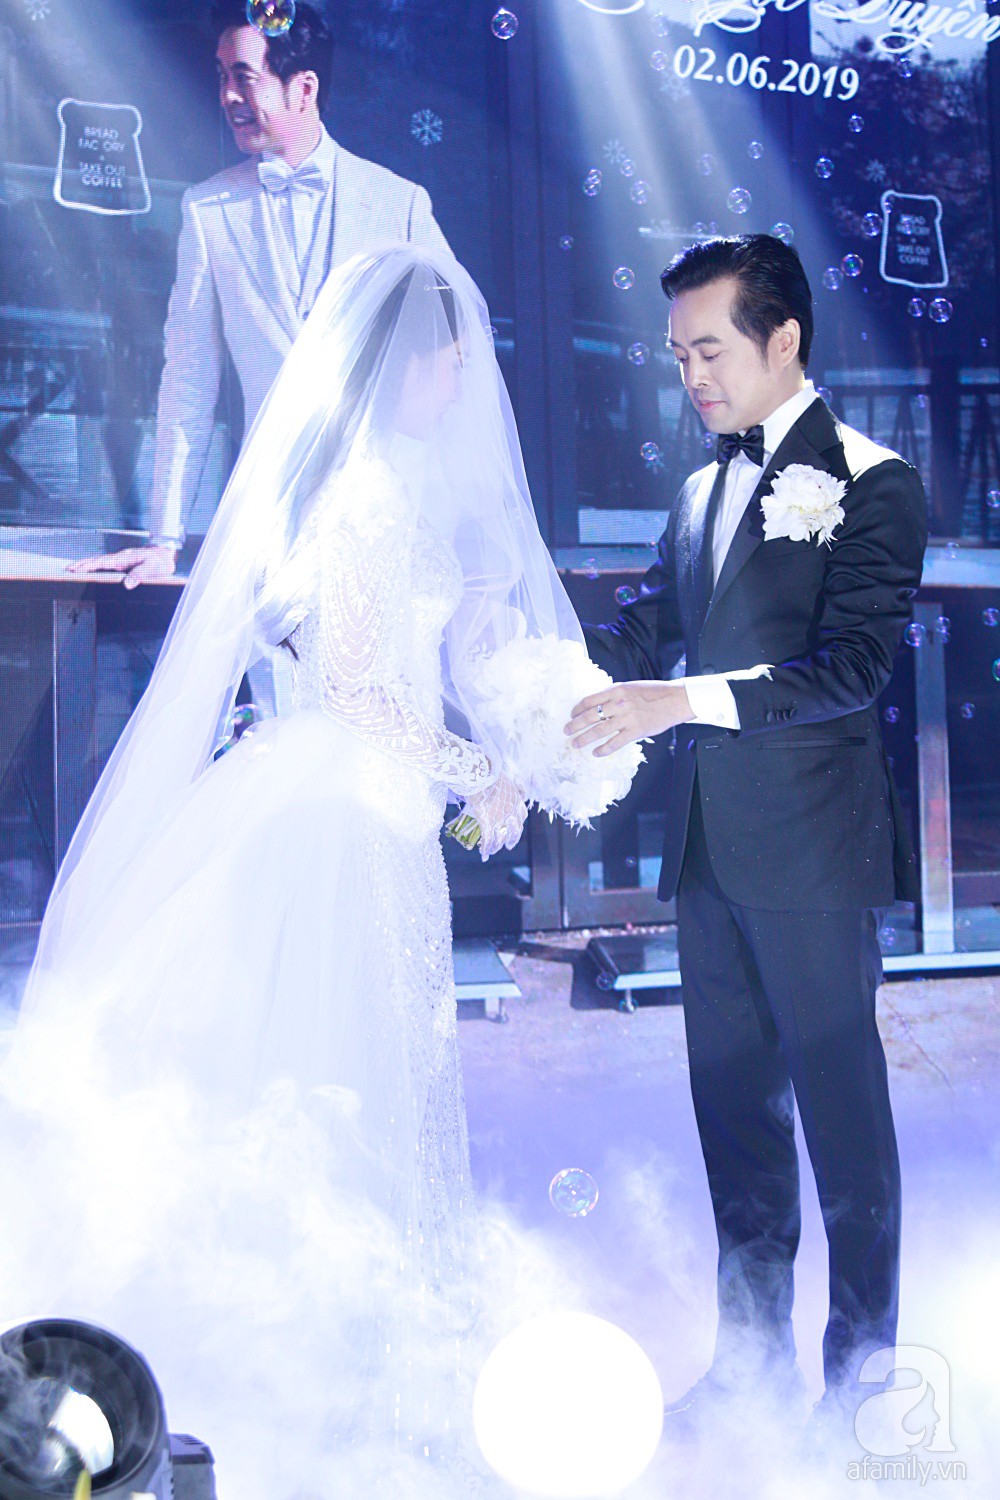 Tiệc cưới chính thức bắt đầu, cô dâu Sara Lưu âu yếm lau nhẹ vết son của mình trên môi chú rể Dương Khắc Linh - Ảnh 8.